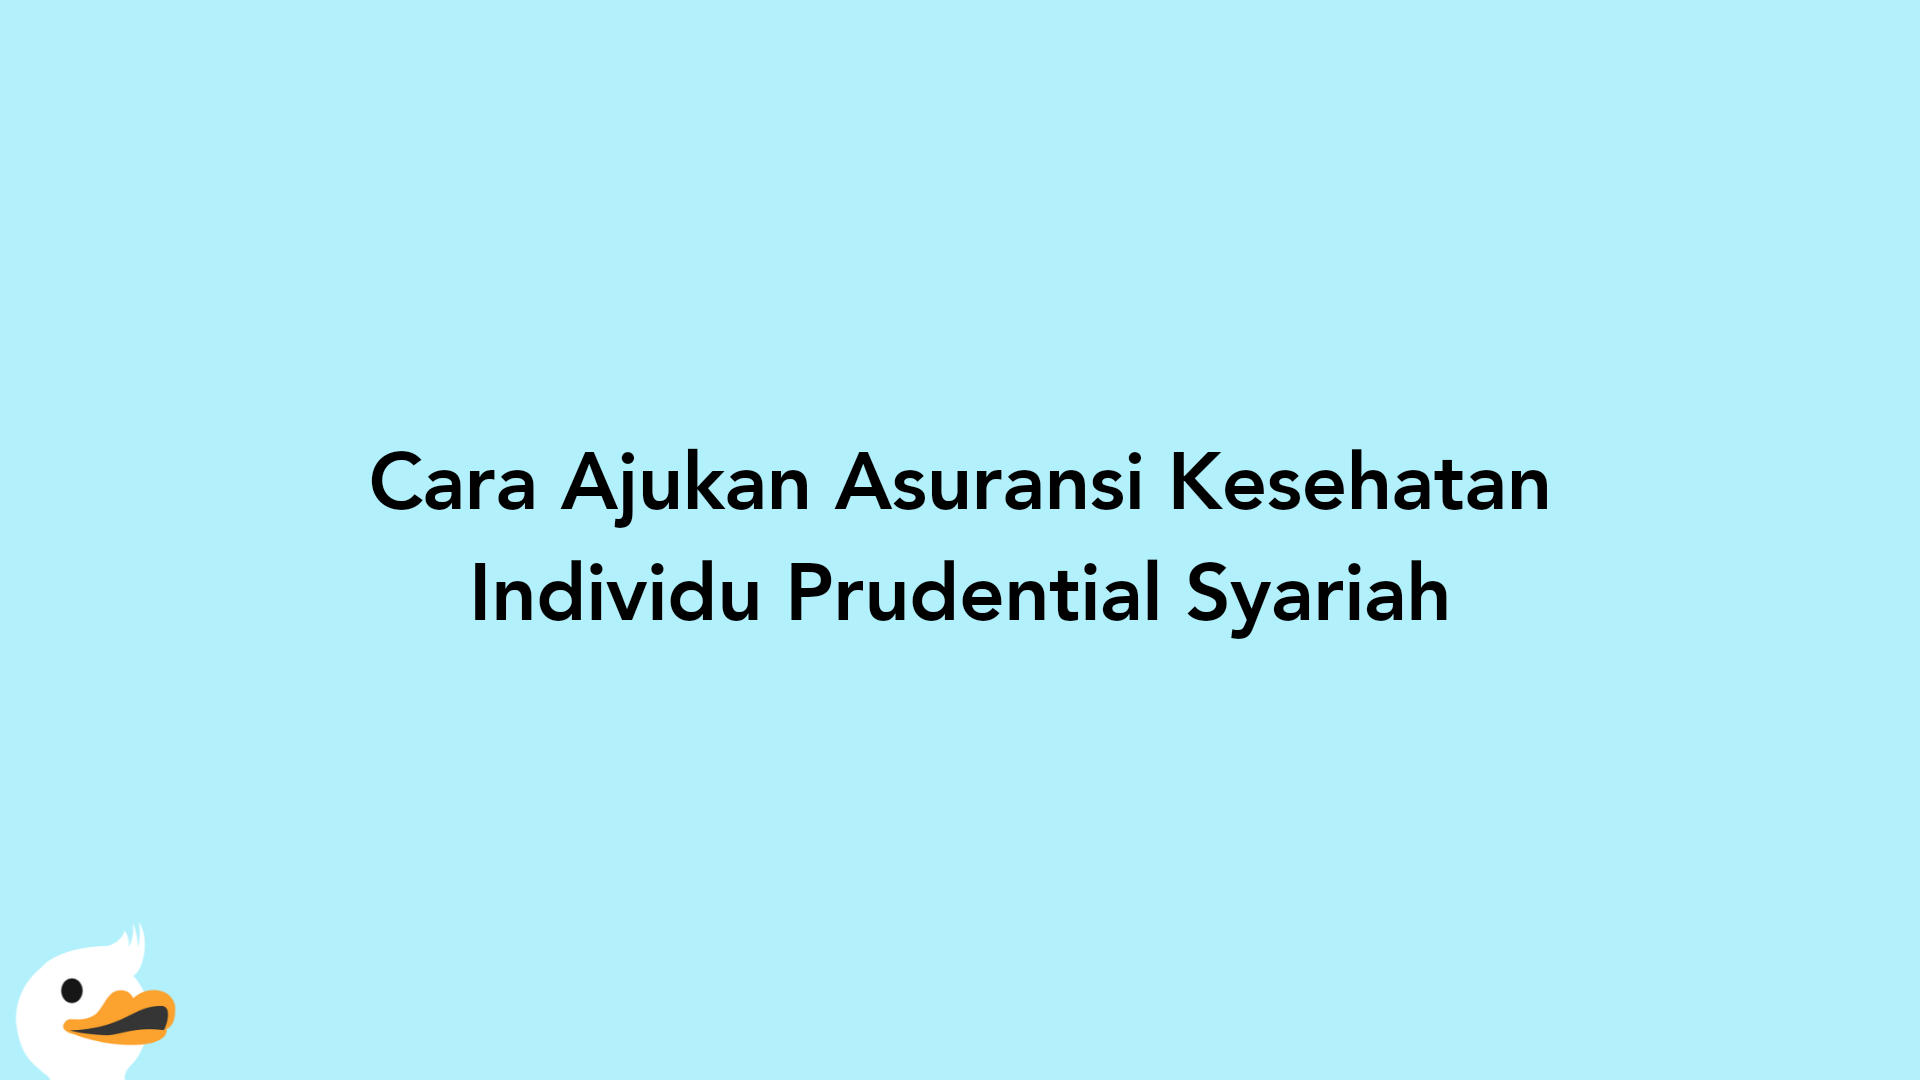 Cara Ajukan Asuransi Kesehatan Individu Prudential Syariah